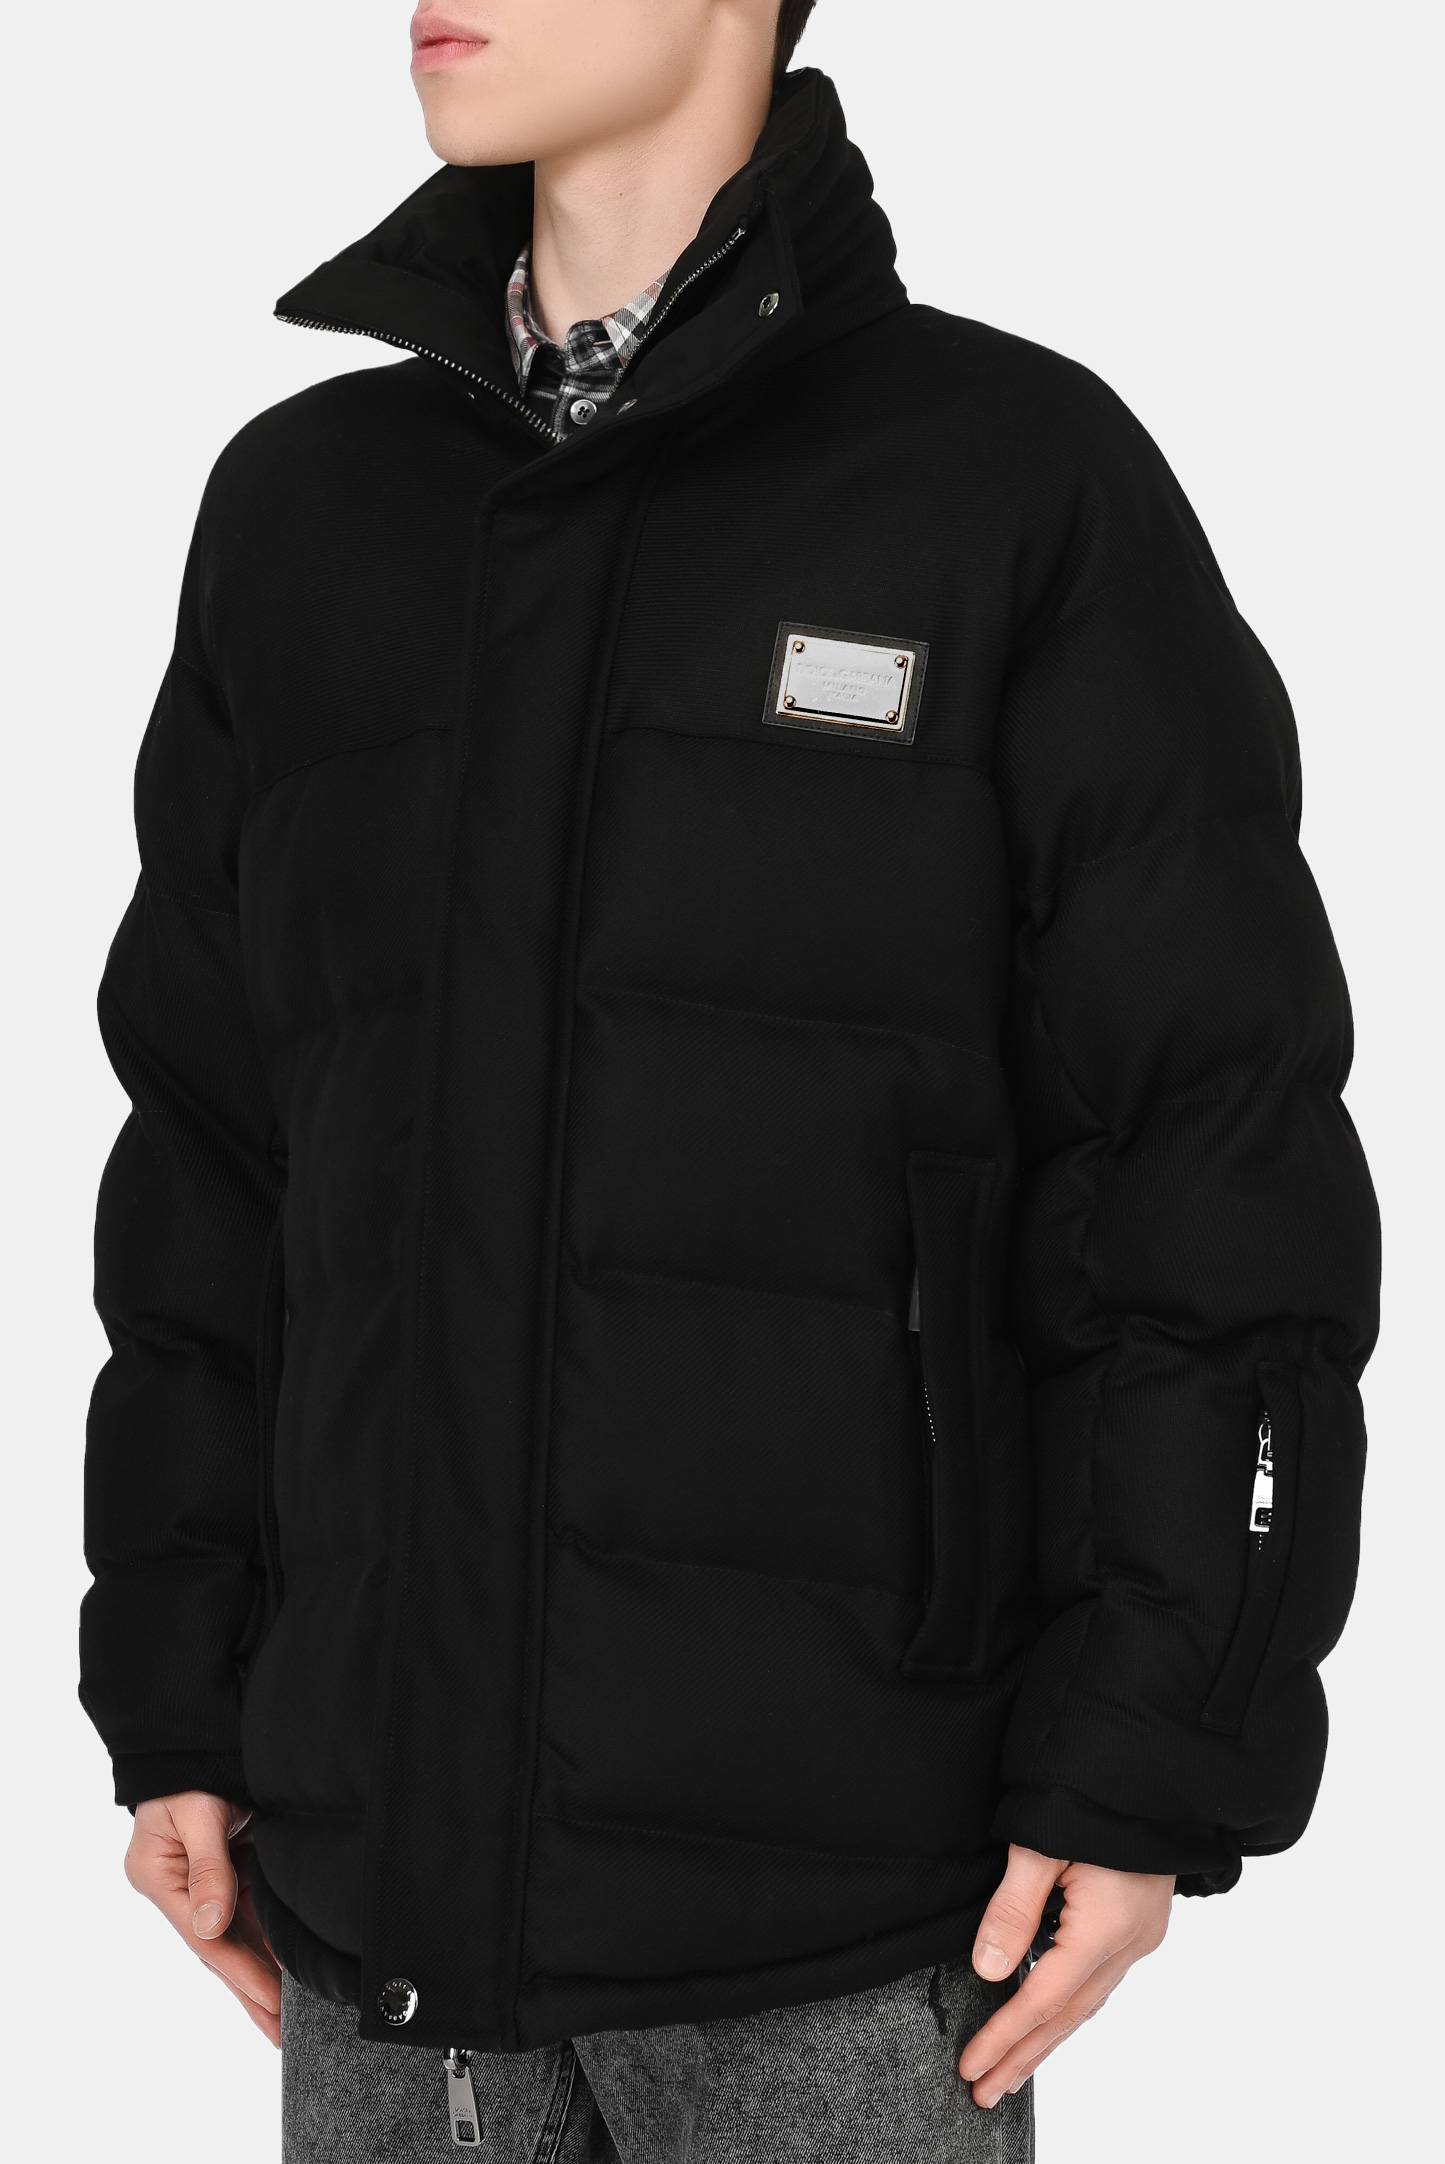 Куртка DOLCE & GABBANA G9UT7T GEU24, цвет: Черный, Мужской